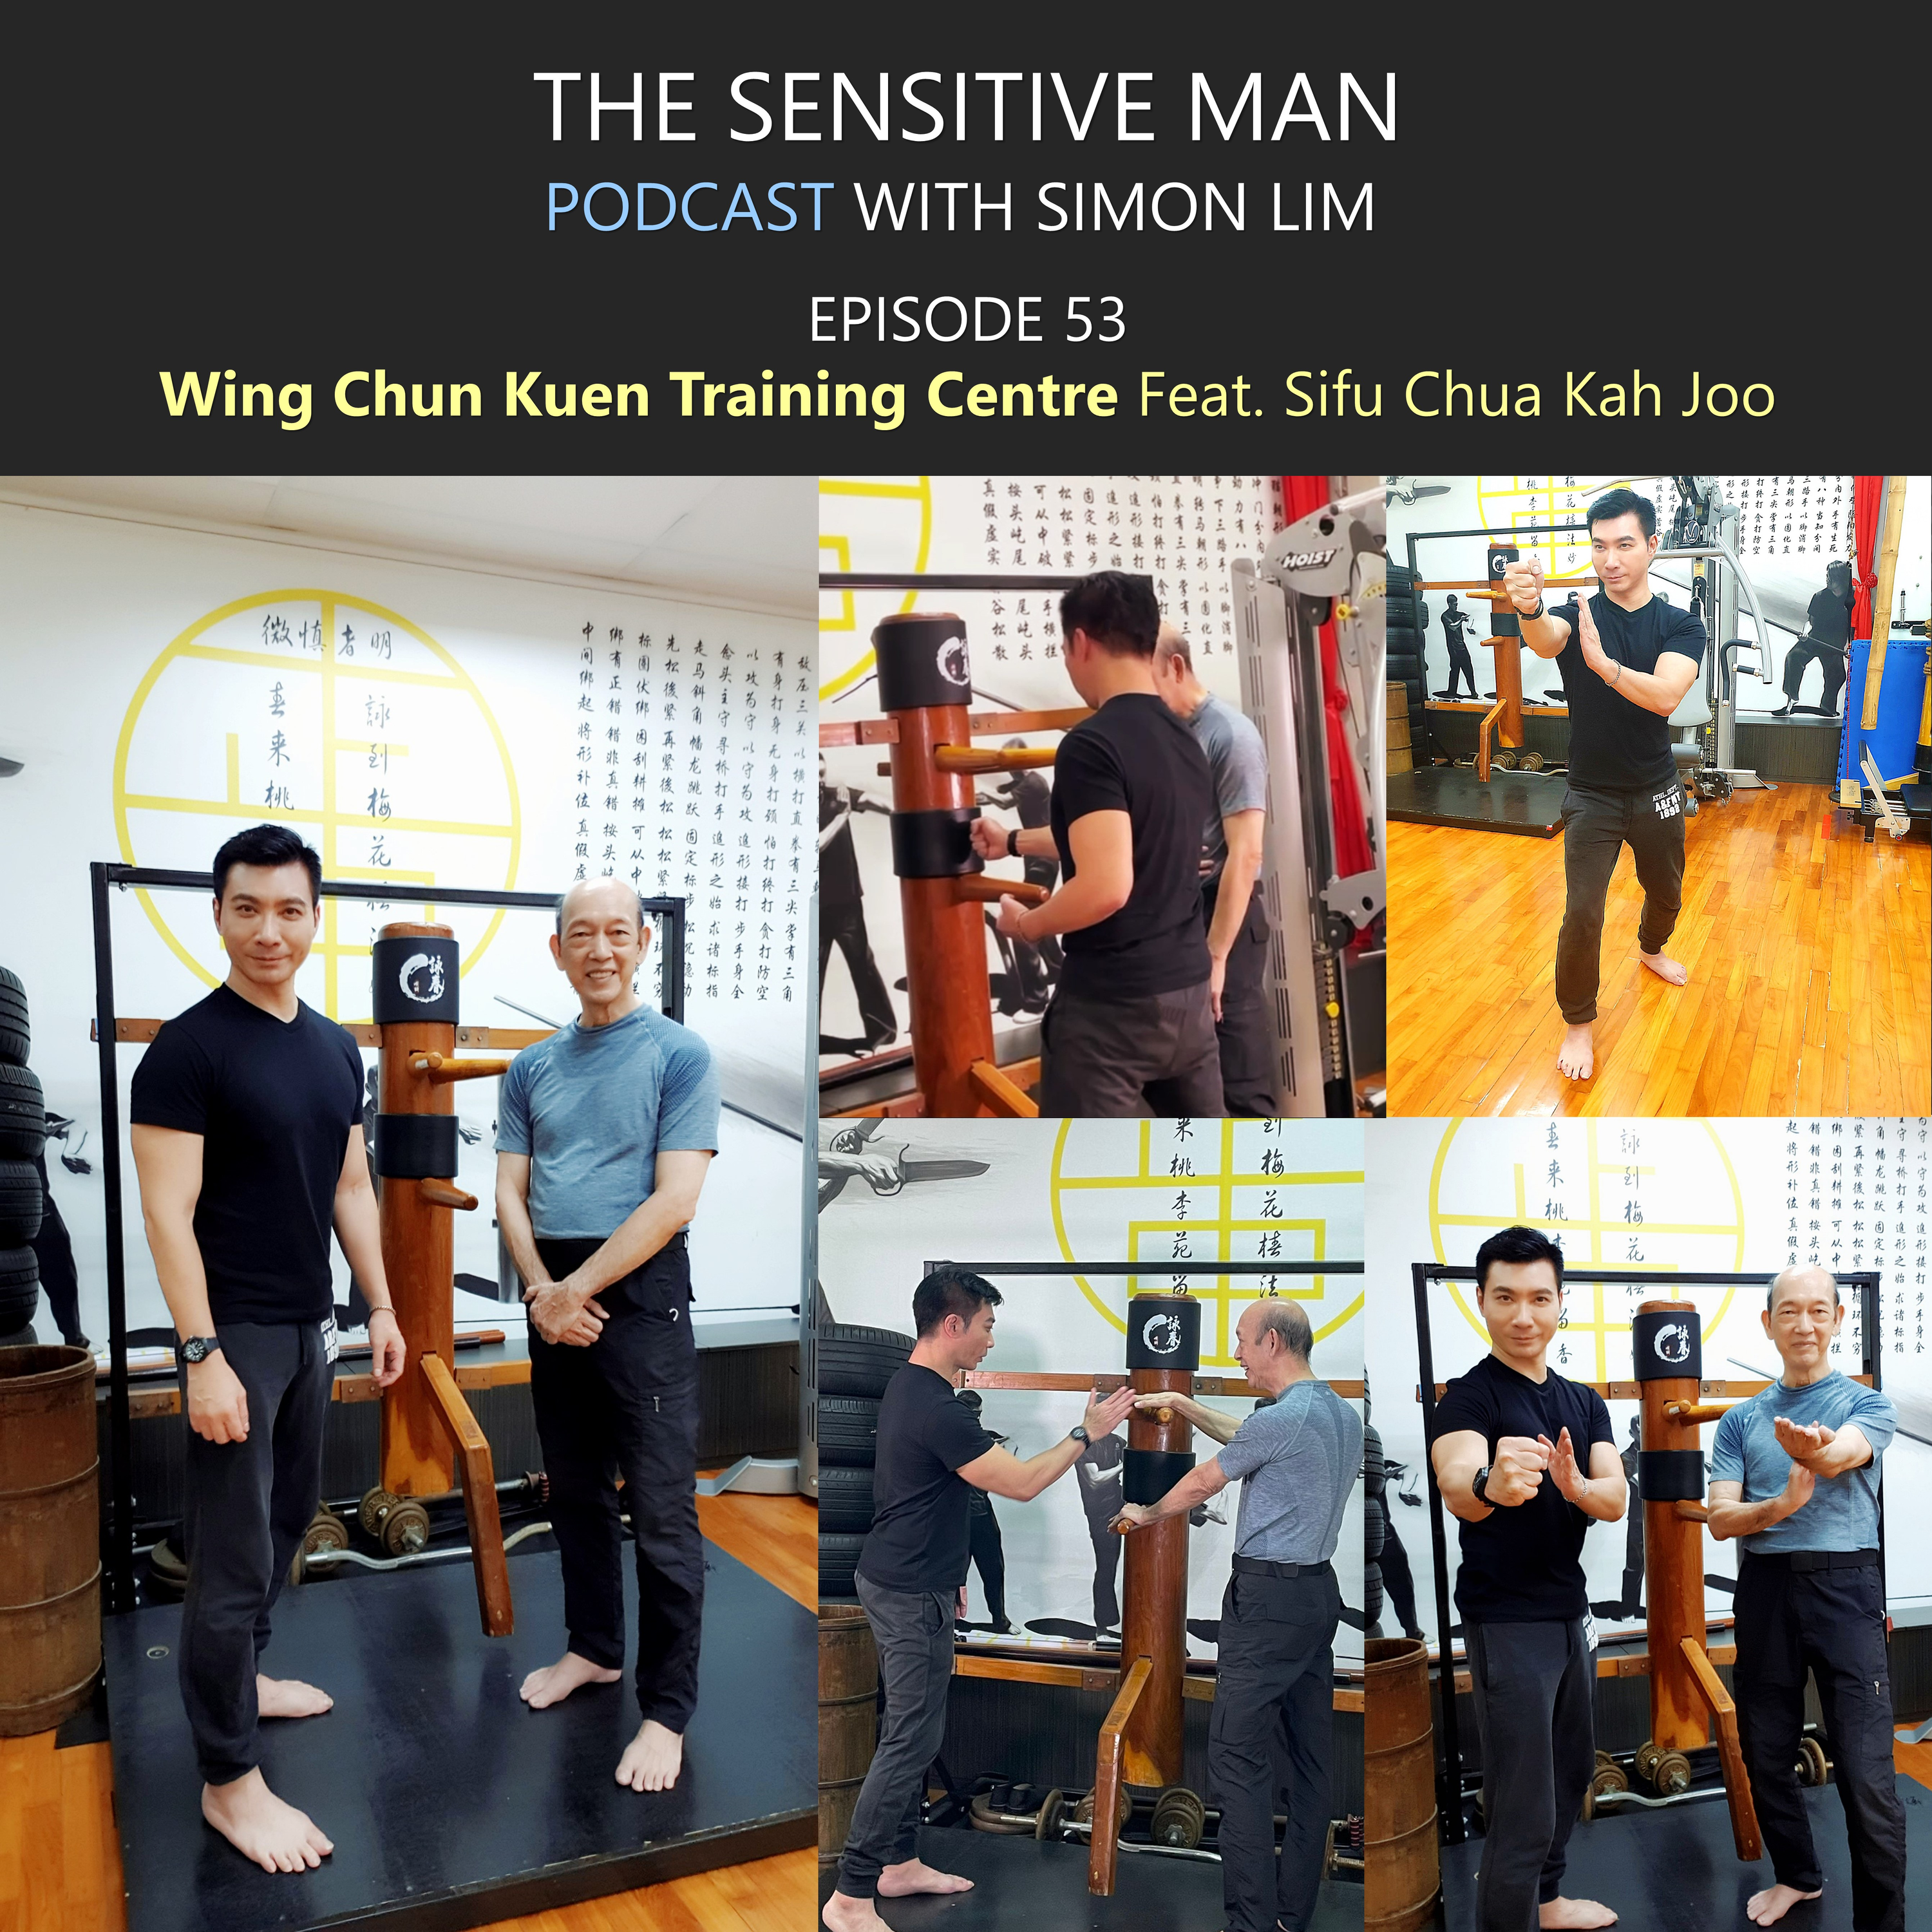 WING CHUN KUEN TRAINING CENTRE Feat. Sifu Chua Kah Joo